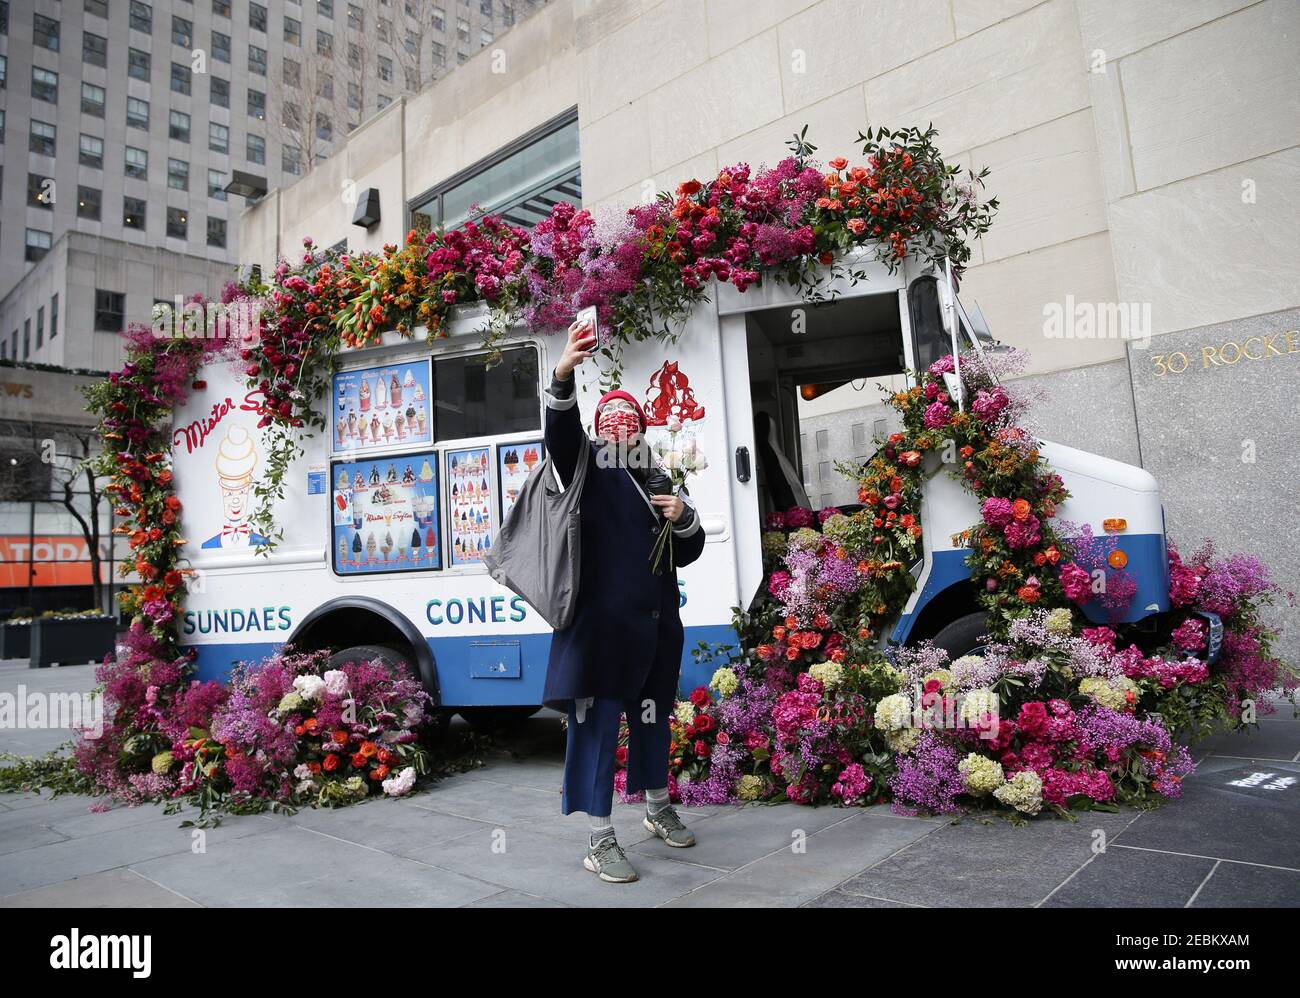 Eine Frau macht ein Selfie in der Nähe eines Mister Softee Eisdielwagens, der mit Blumen bedeckt ist, zur Feier des bevorstehenden Valentinstags-Feiertags im Rockefeller Center in New York City am Freitag, dem 12. Februar 2021. Zur Feier des Valentinstags und als Teil des Rockefeller Center-Monats "Liebe im Zentrum" stellte der renommierte Blumendesigner Lewis Miller Design zwei maßgeschneiderte Mister Softee Trucks aus, die mit Tausenden von bunten Rosen, Hortensien, Narzissen, Chrysanthemen, Mimosen und mehr kaskadierten. Foto von John Angelillo/UPI Stockfoto